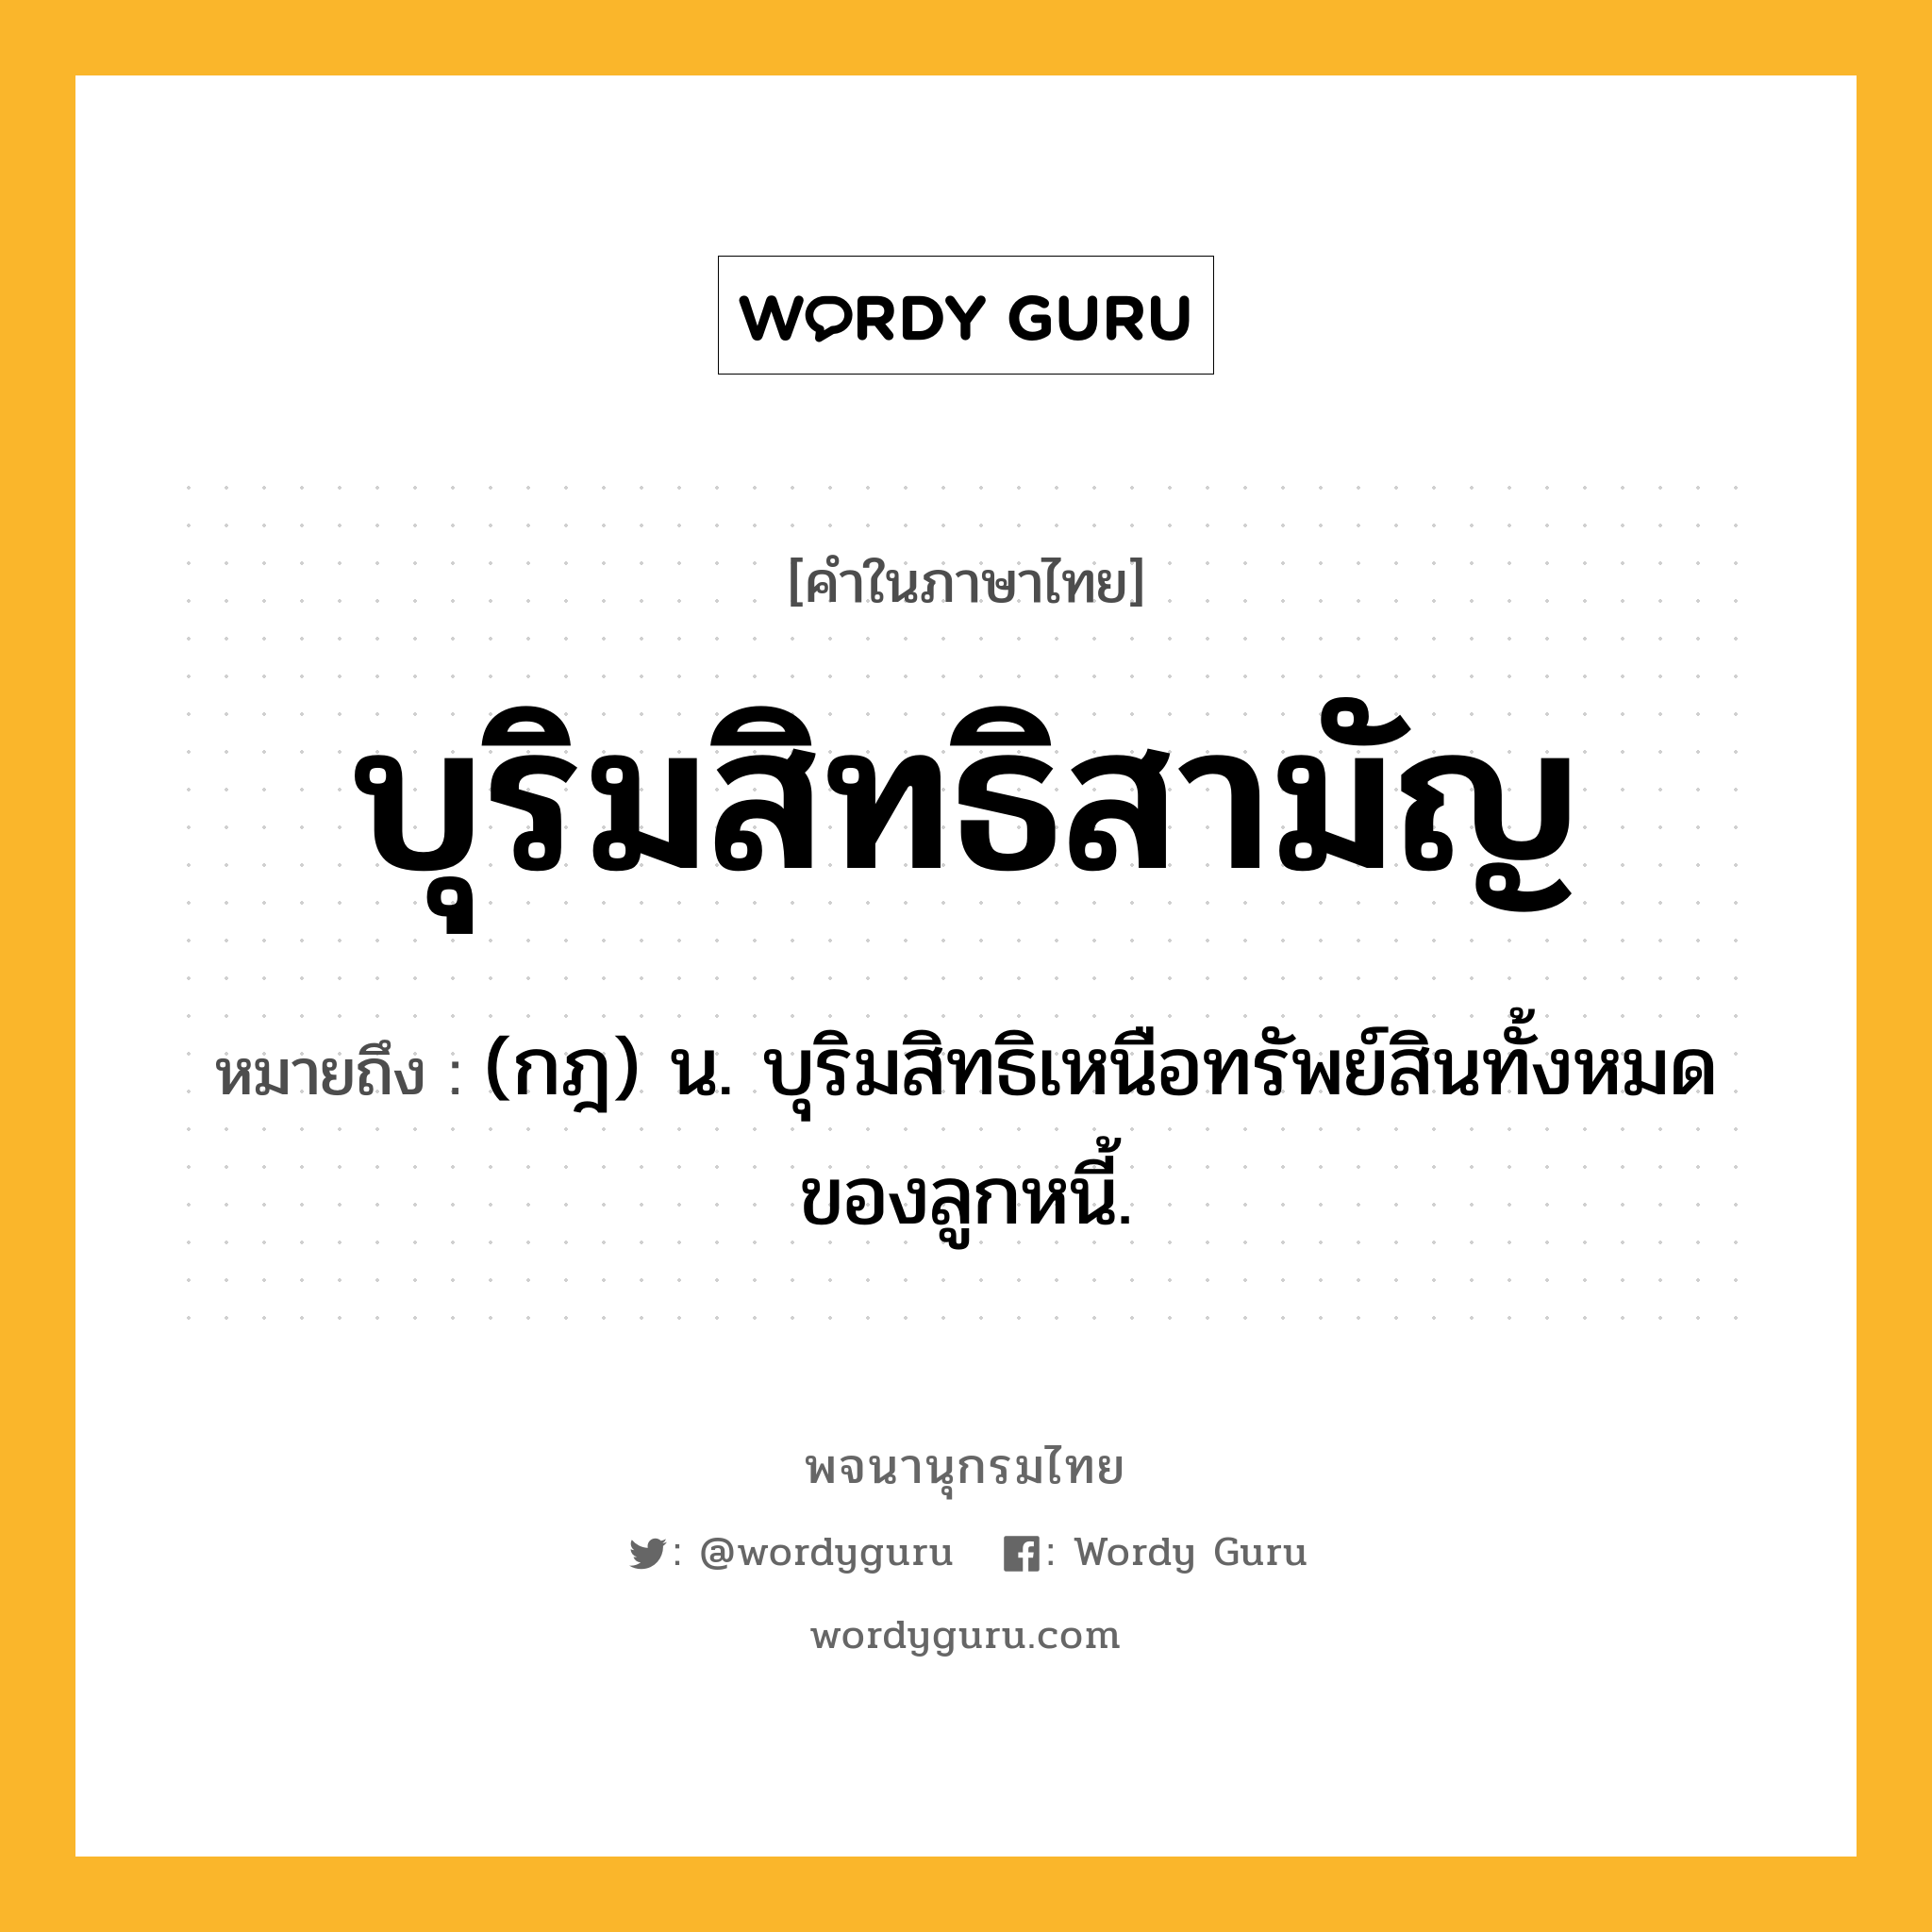 บุริมสิทธิสามัญ ความหมาย หมายถึงอะไร?, คำในภาษาไทย บุริมสิทธิสามัญ หมายถึง (กฎ) น. บุริมสิทธิเหนือทรัพย์สินทั้งหมดของลูกหนี้.